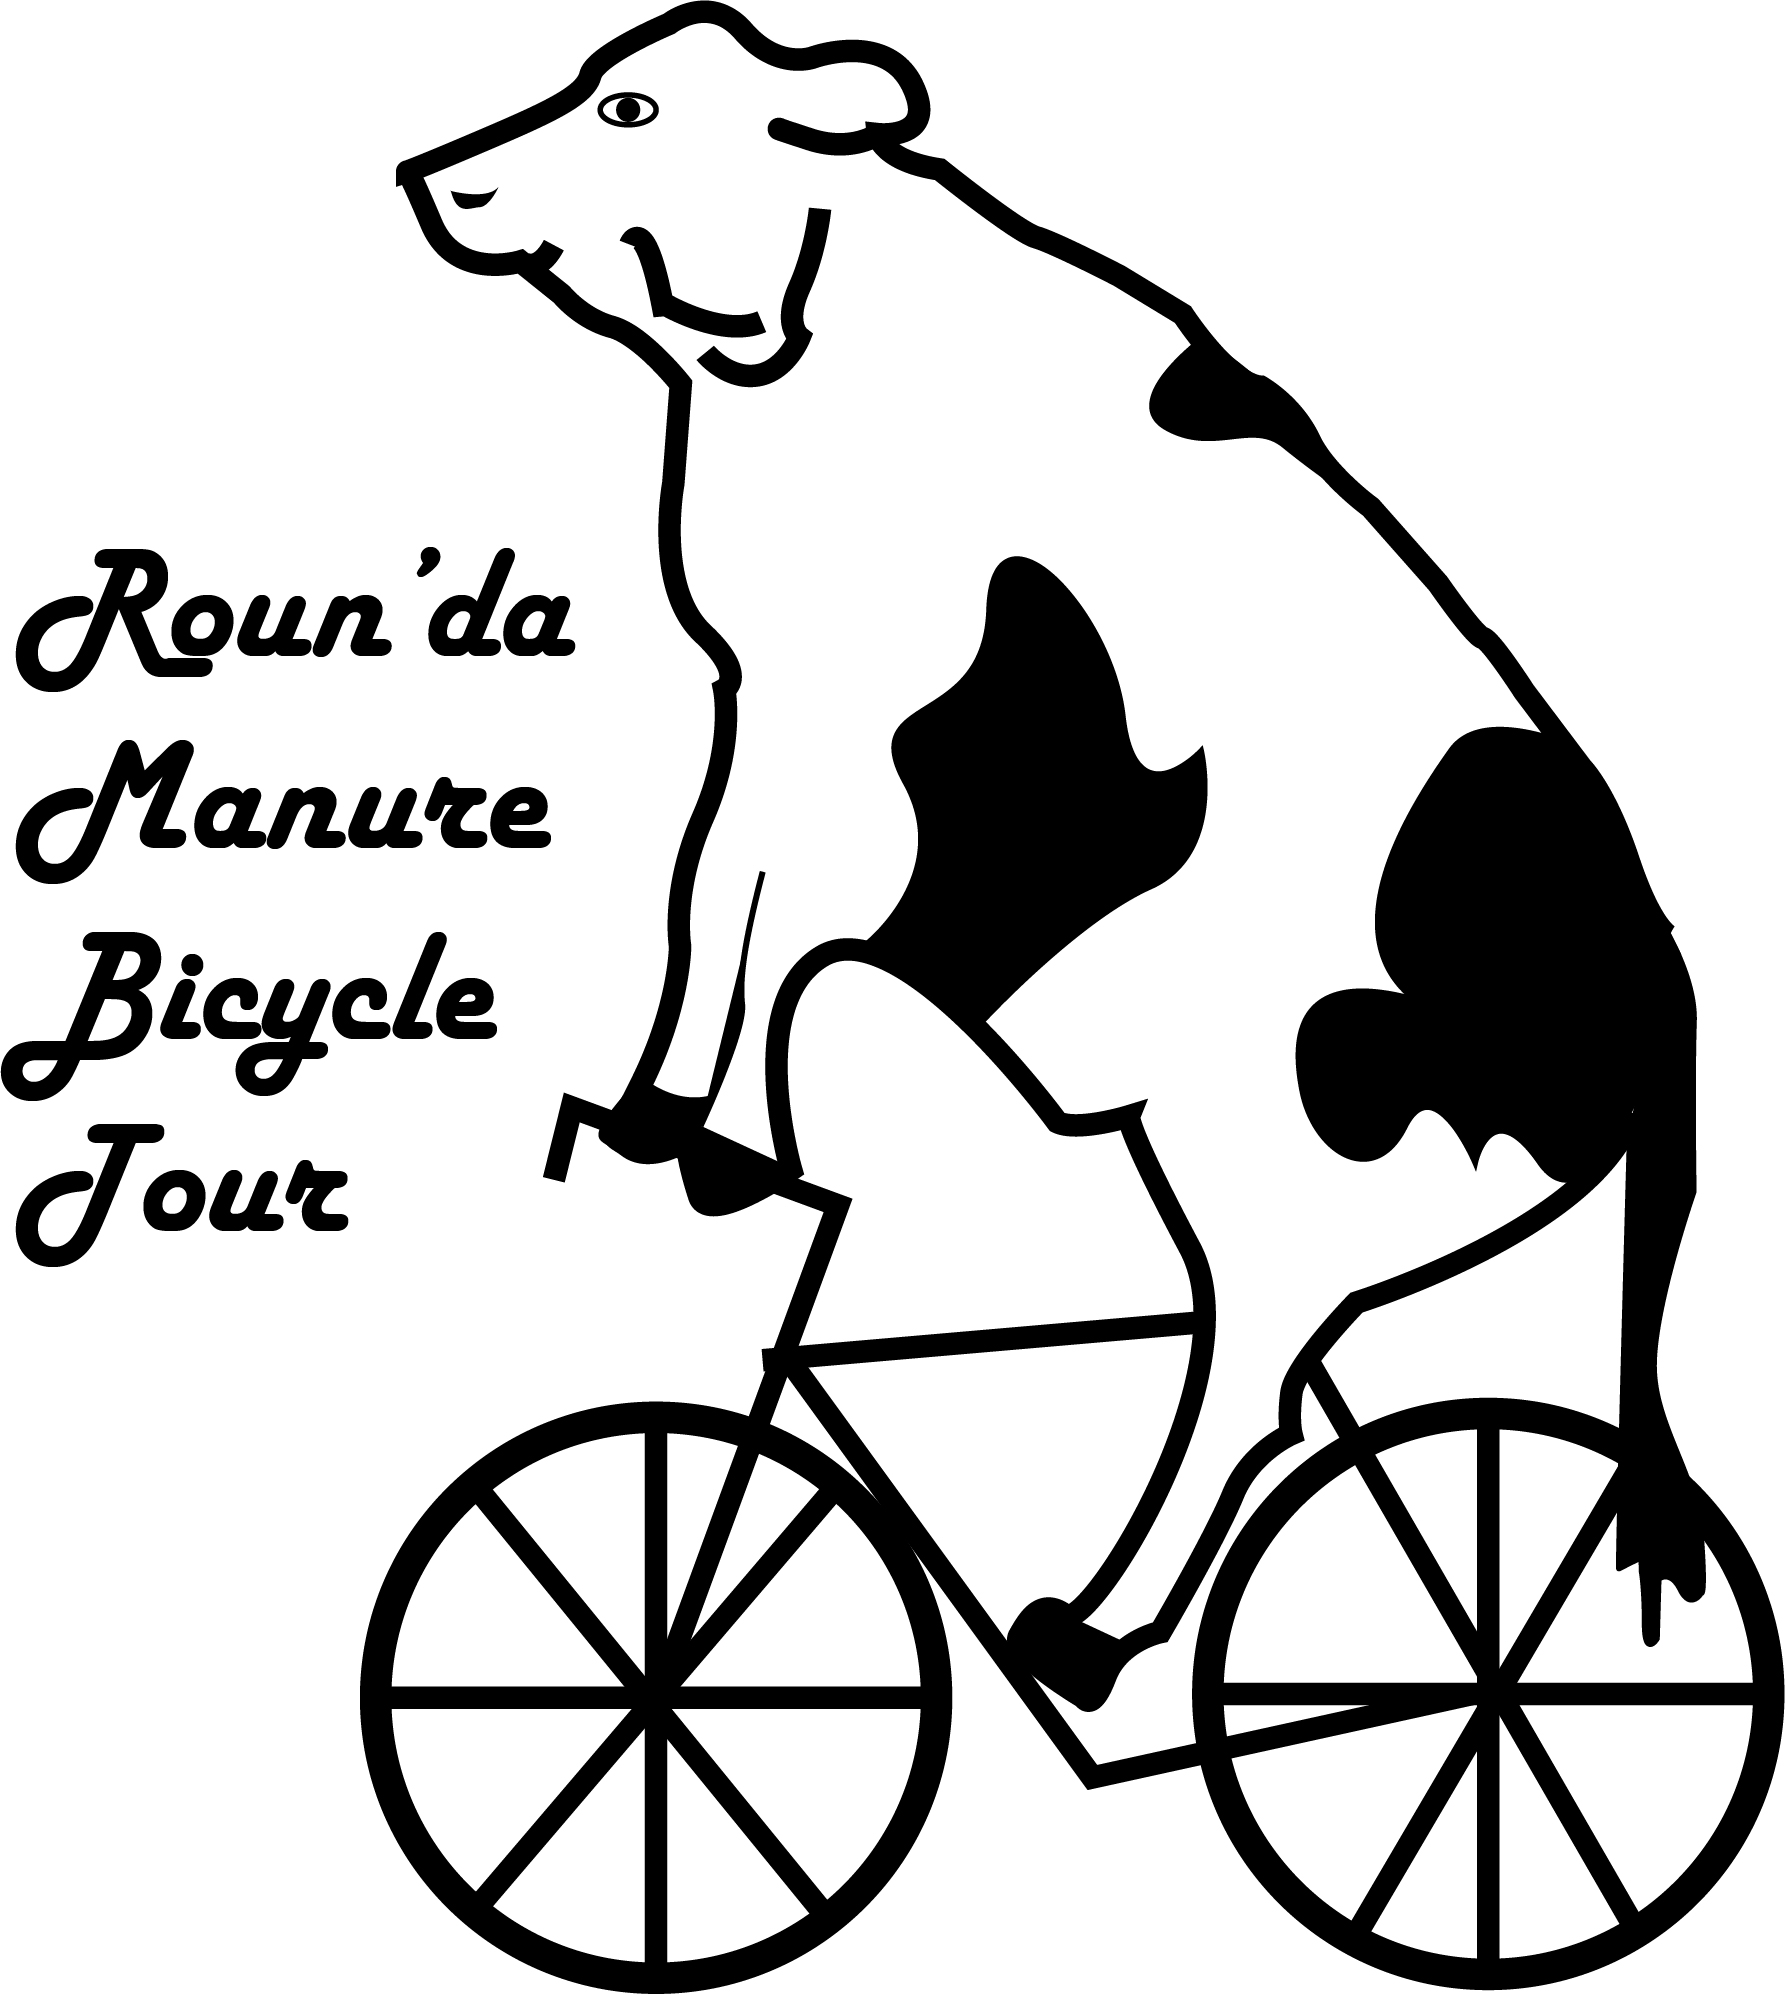 Roun'da Manure Bicycle Tour